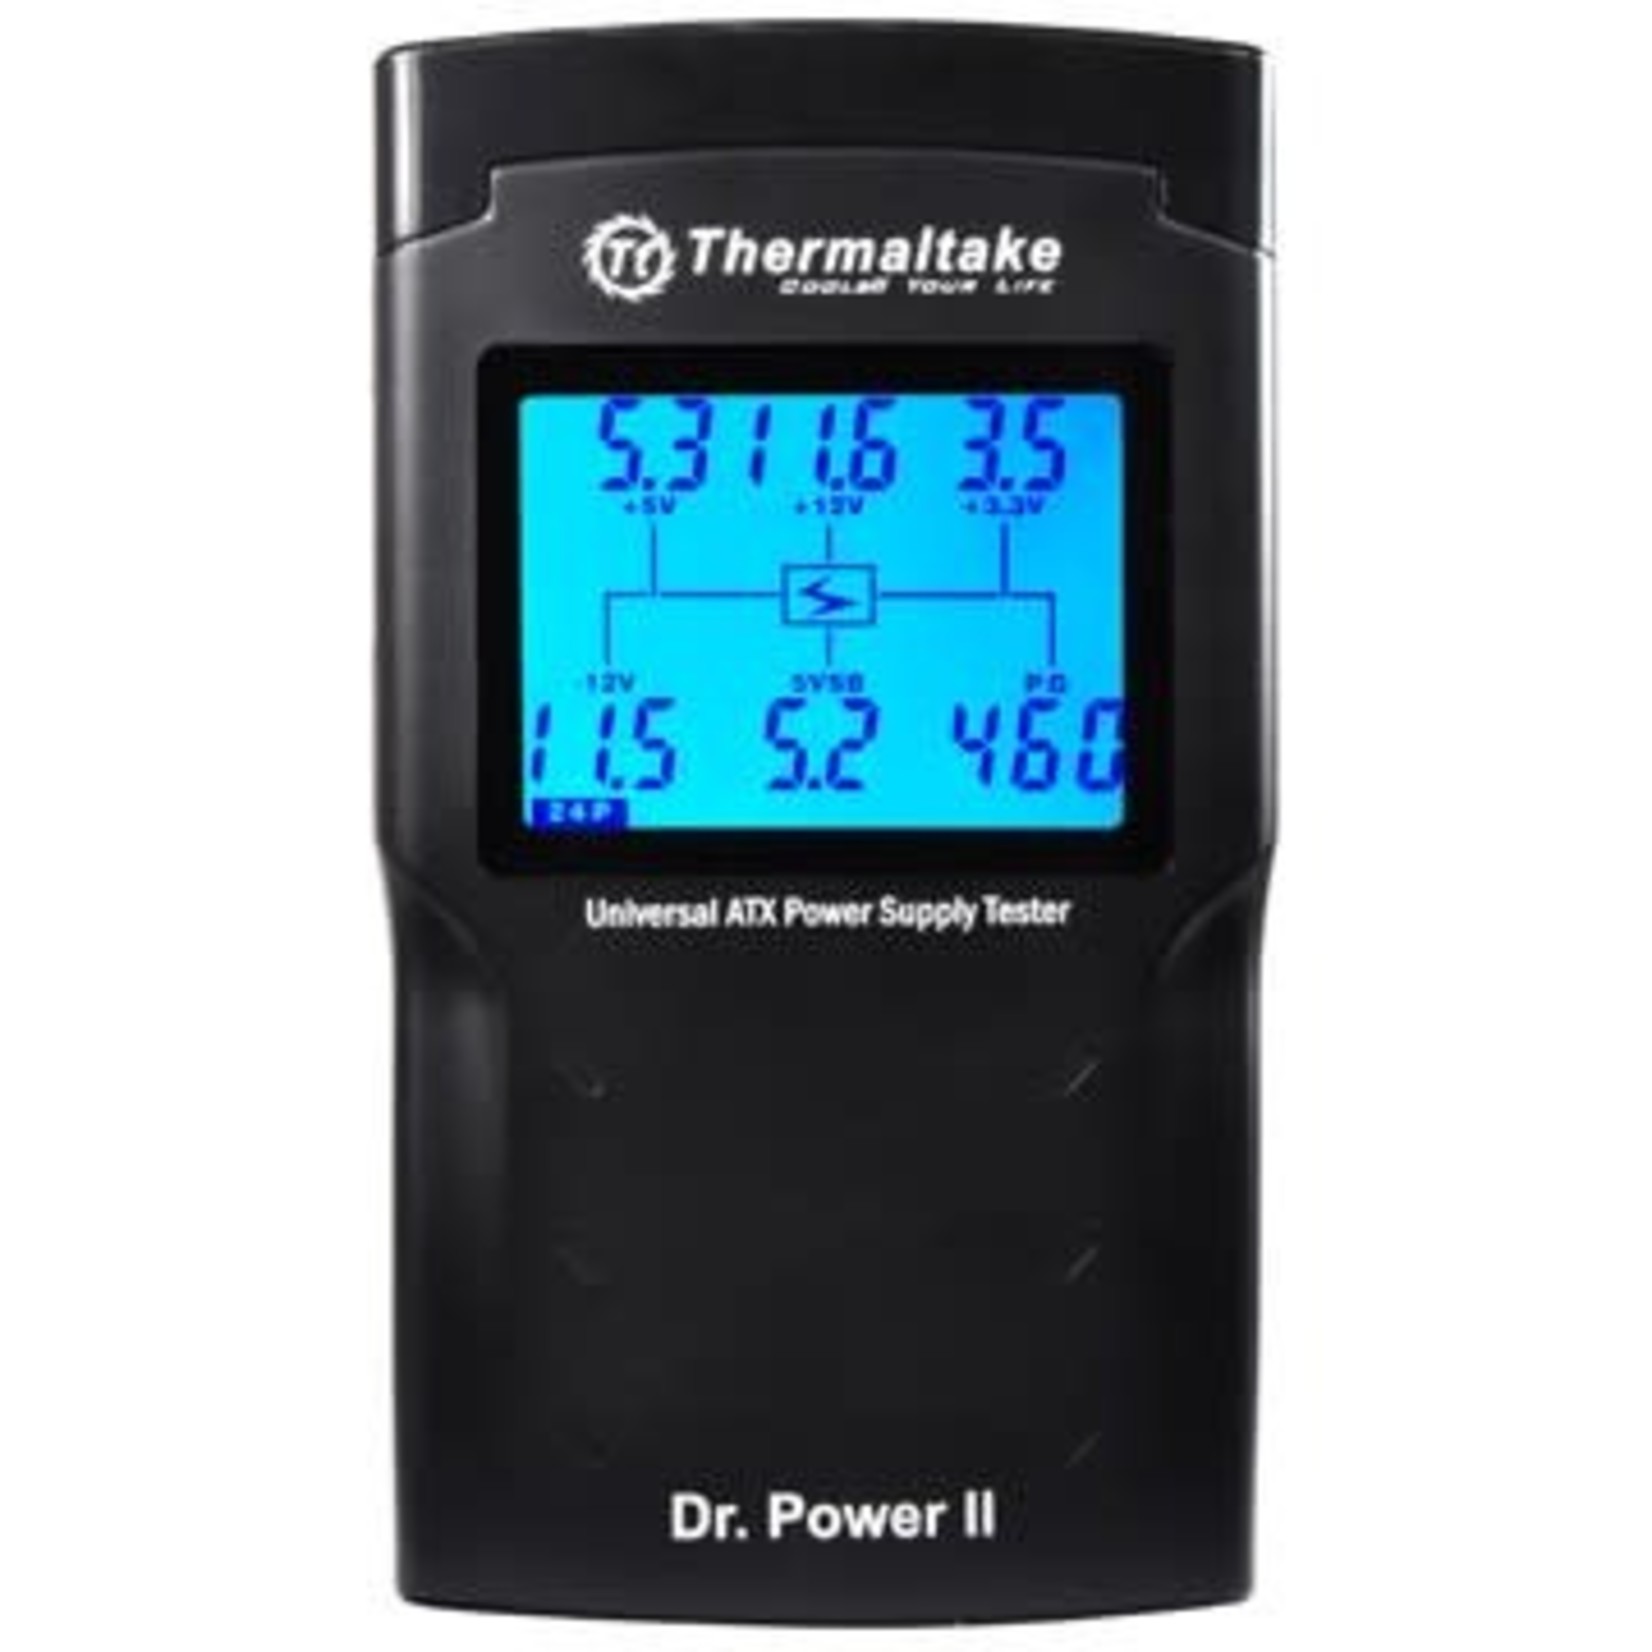 Thermaltake Thermaltake Dr Power II Power Supply Tester